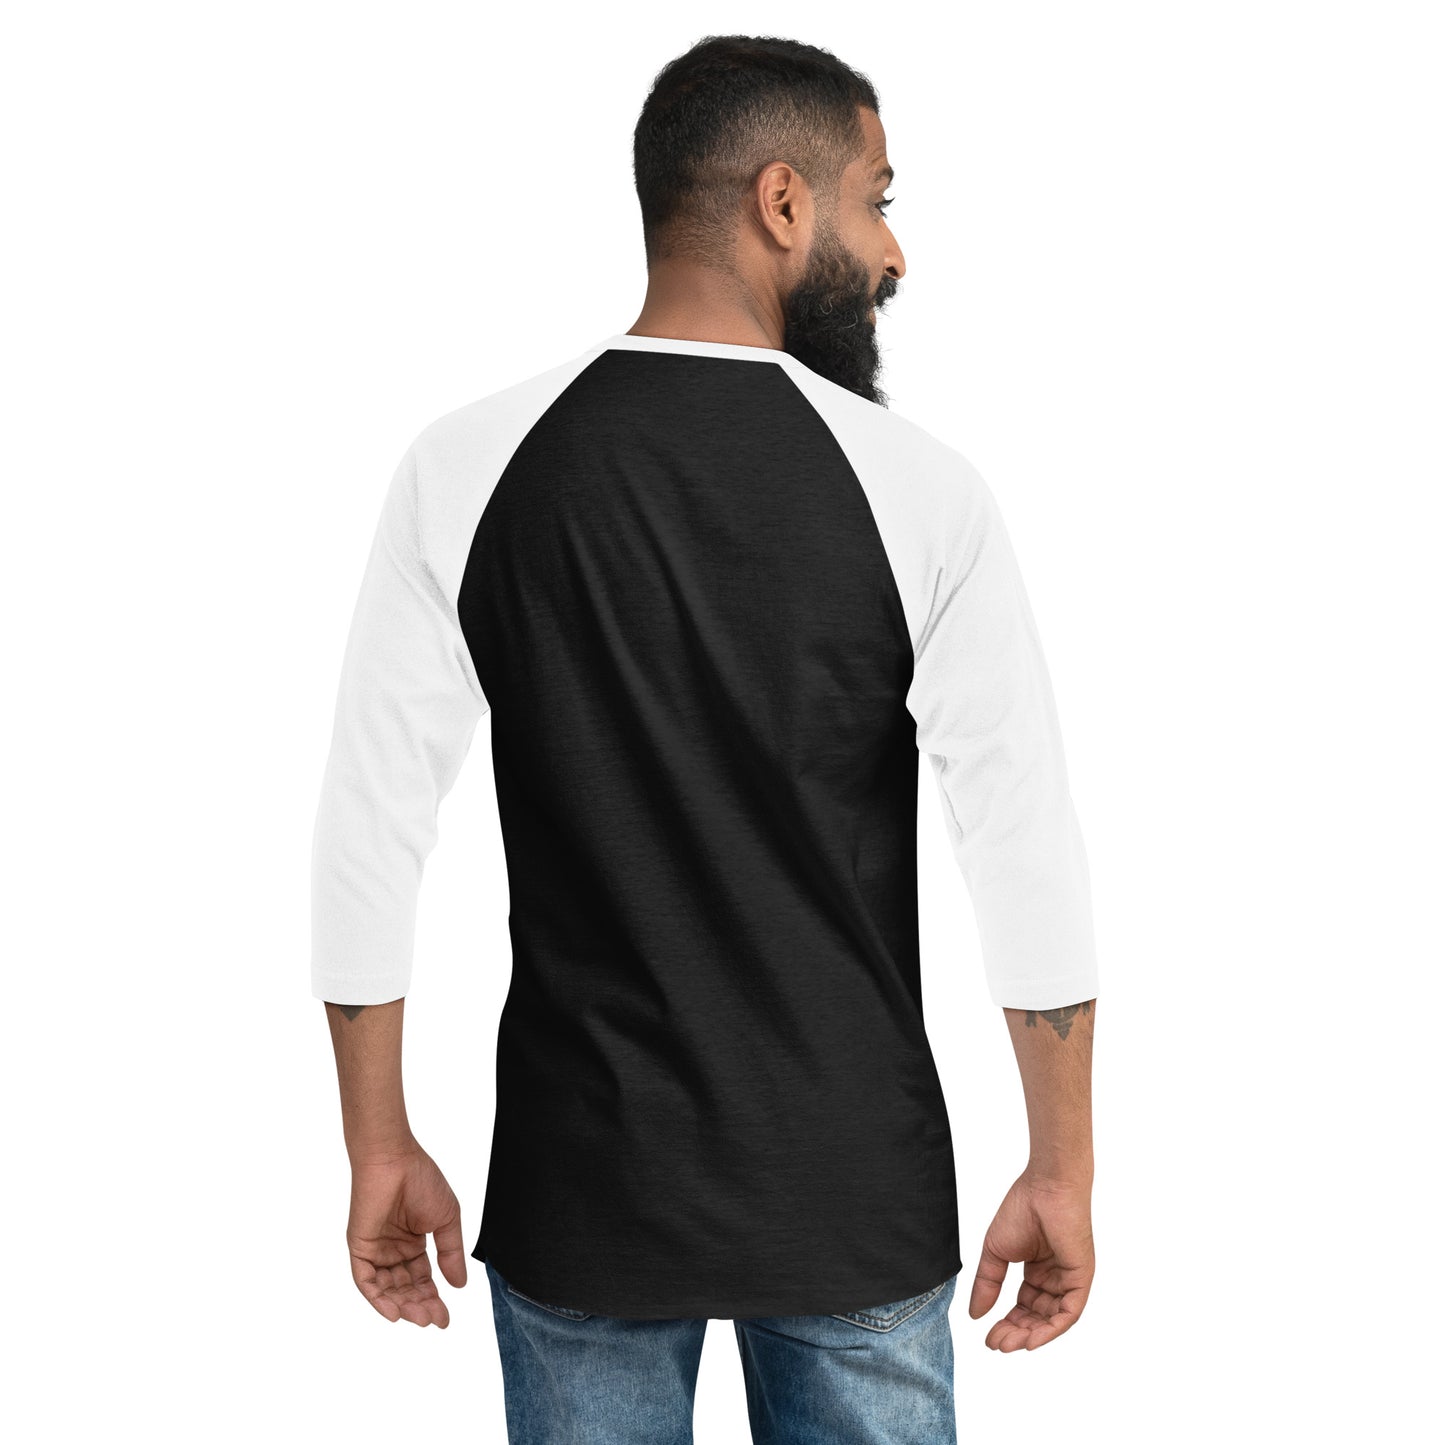 Number and Name - 3/4 sleeve raglan shirt